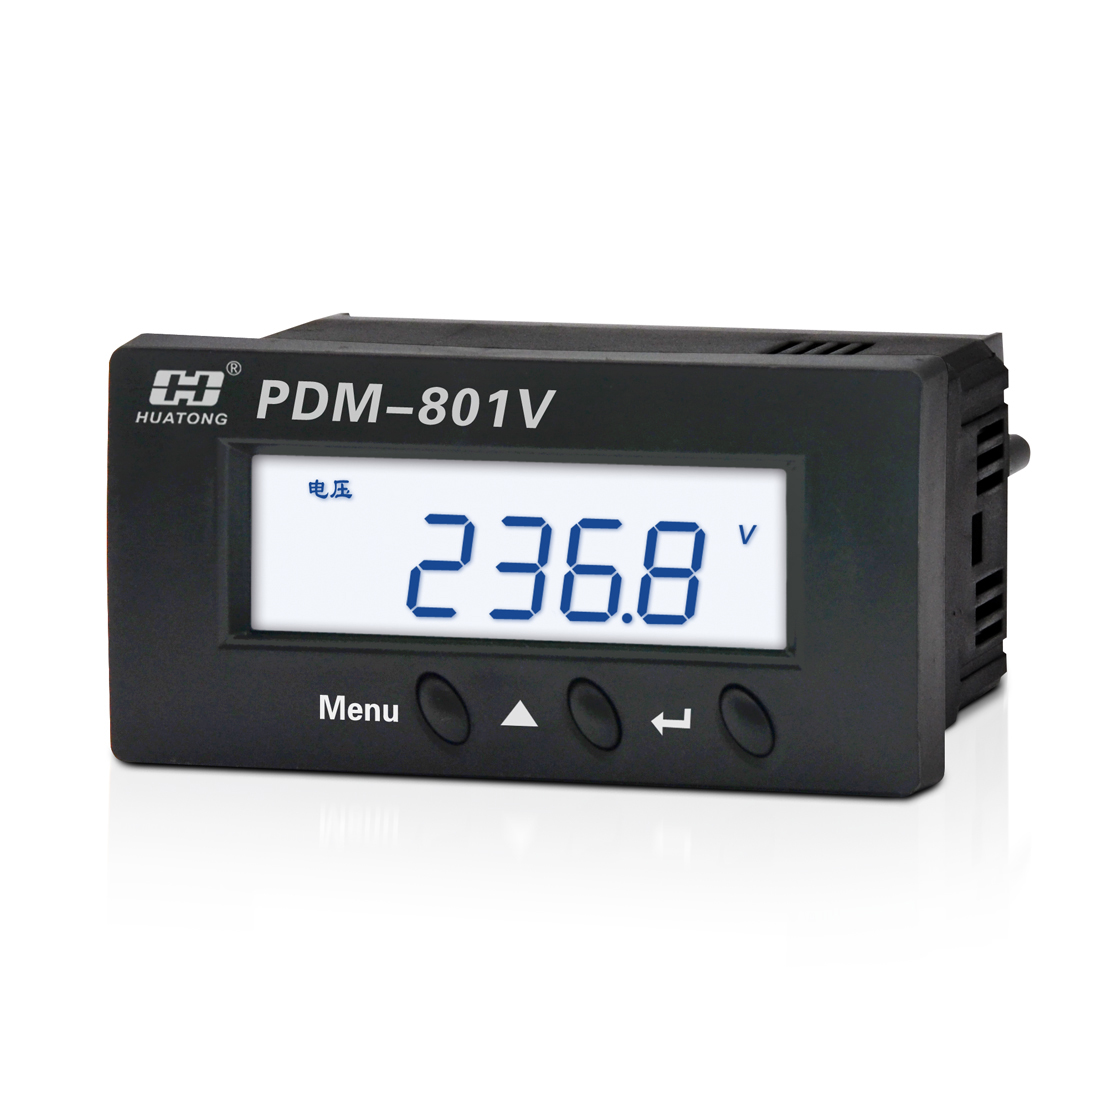 PDM-801V